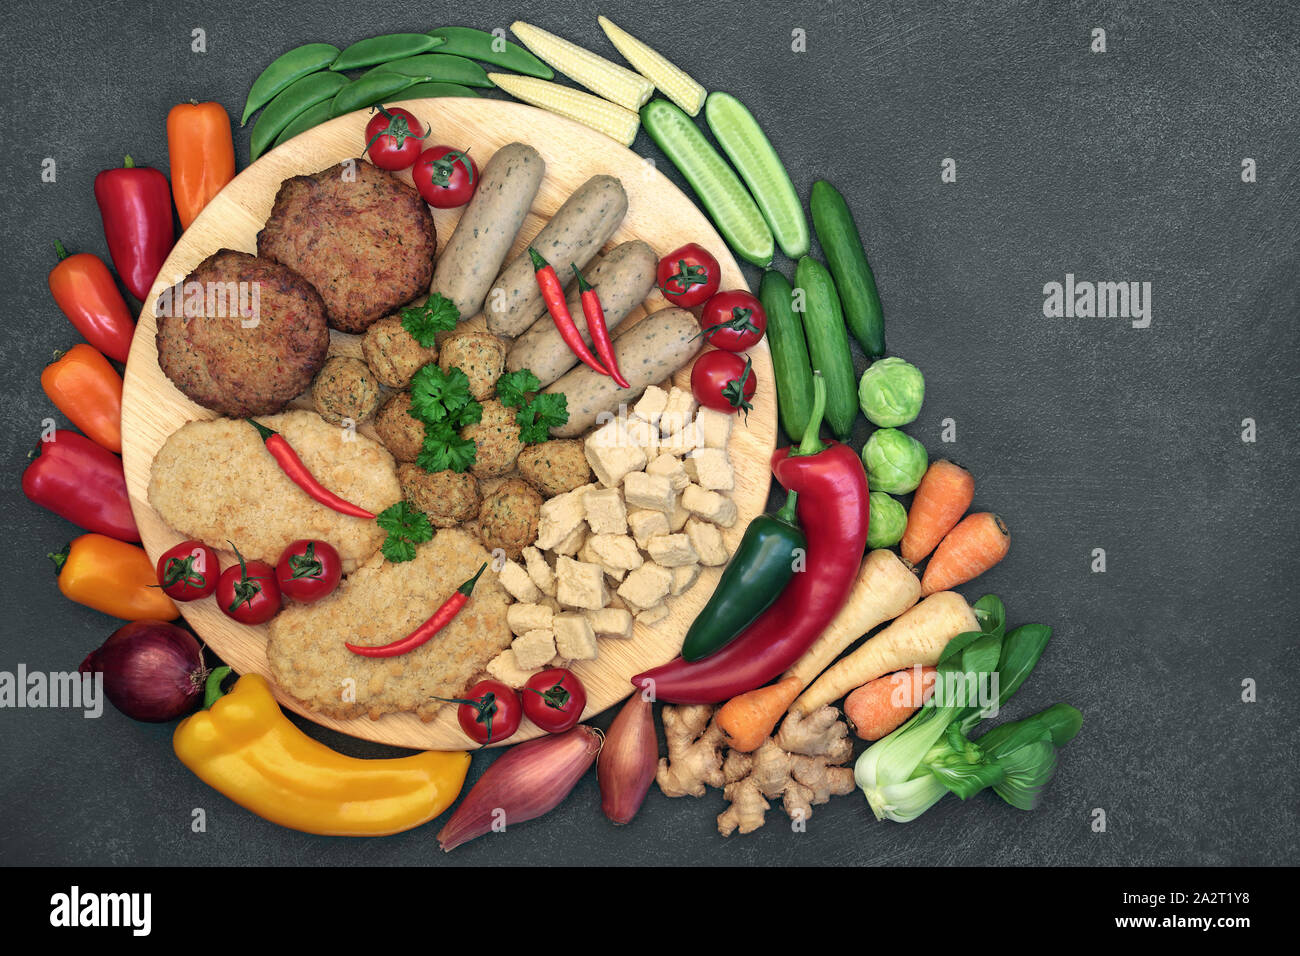 Vegane Ernährung für ethische Essen mit quorn Fleischersatz Auswahl einen hohen Proteingehalt und Obst & Gemüse. Stockfoto